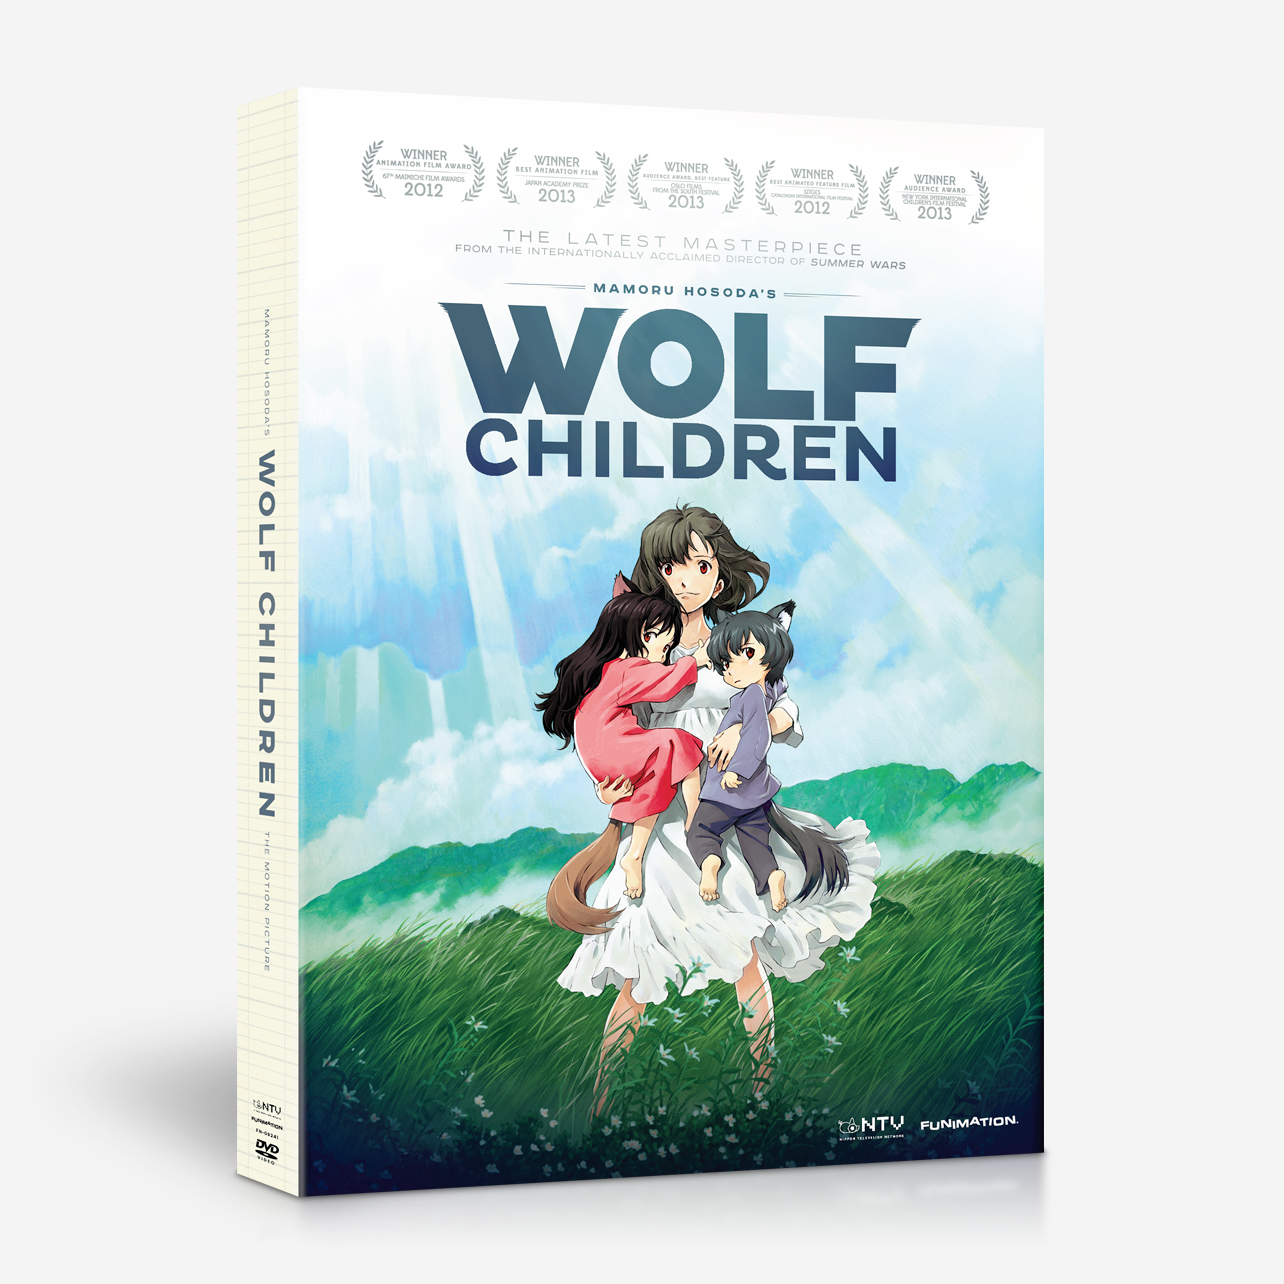 WOLF CHILDREN - MOVIE image count 0